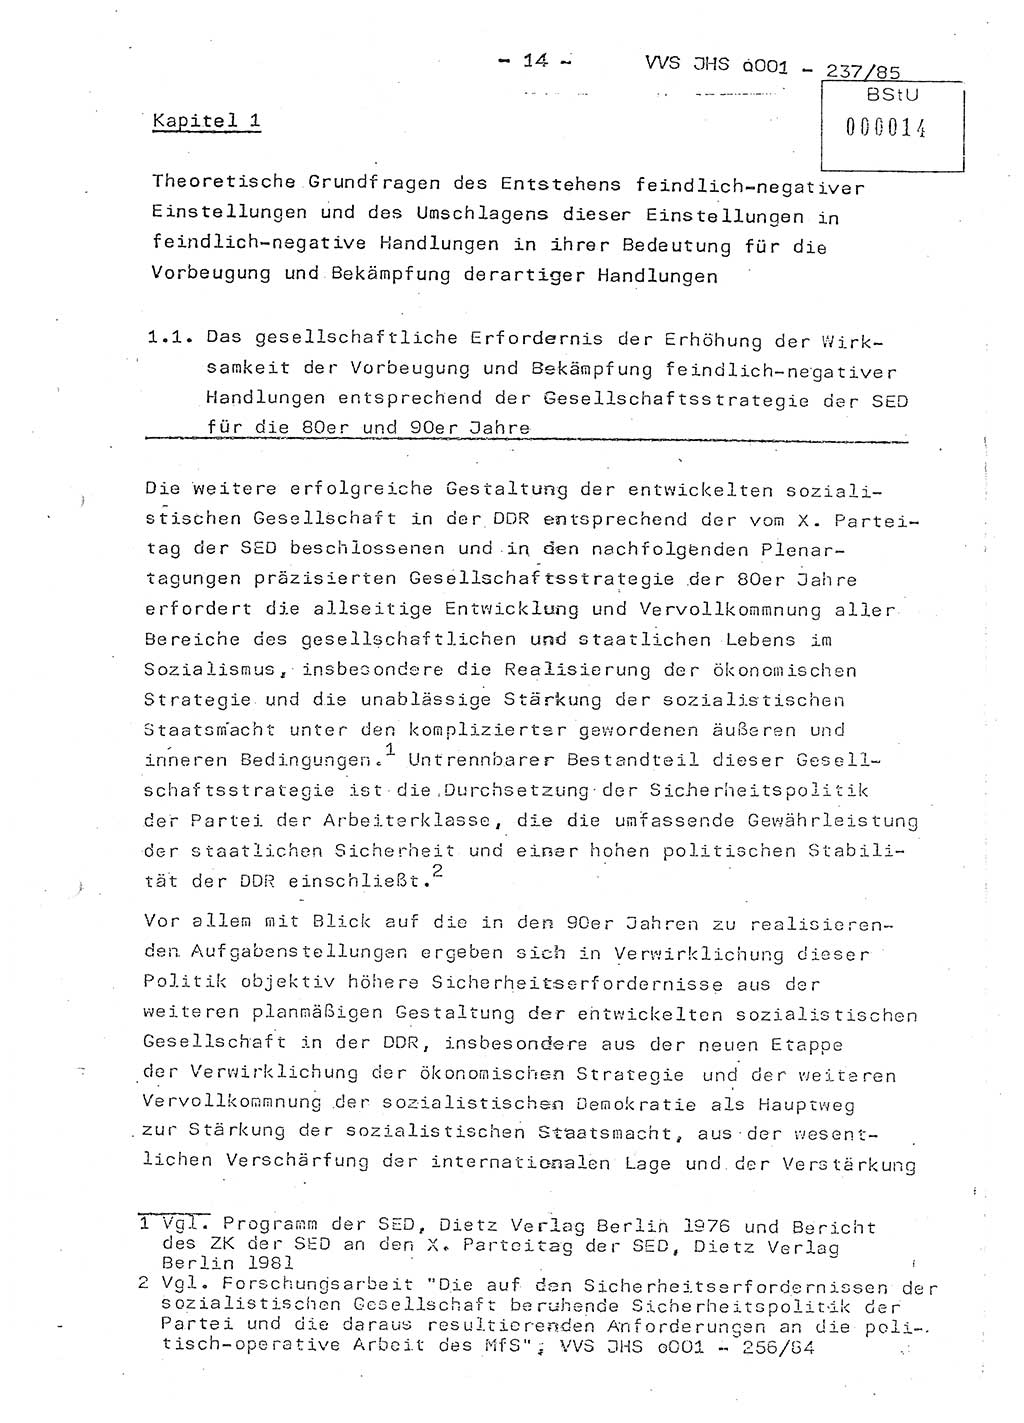 Dissertation Oberstleutnant Peter Jakulski (JHS), Oberstleutnat Christian Rudolph (HA Ⅸ), Major Horst Böttger (ZMD), Major Wolfgang Grüneberg (JHS), Major Albert Meutsch (JHS), Ministerium für Staatssicherheit (MfS) [Deutsche Demokratische Republik (DDR)], Juristische Hochschule (JHS), Vertrauliche Verschlußsache (VVS) o001-237/85, Potsdam 1985, Seite 14 (Diss. MfS DDR JHS VVS o001-237/85 1985, S. 14)